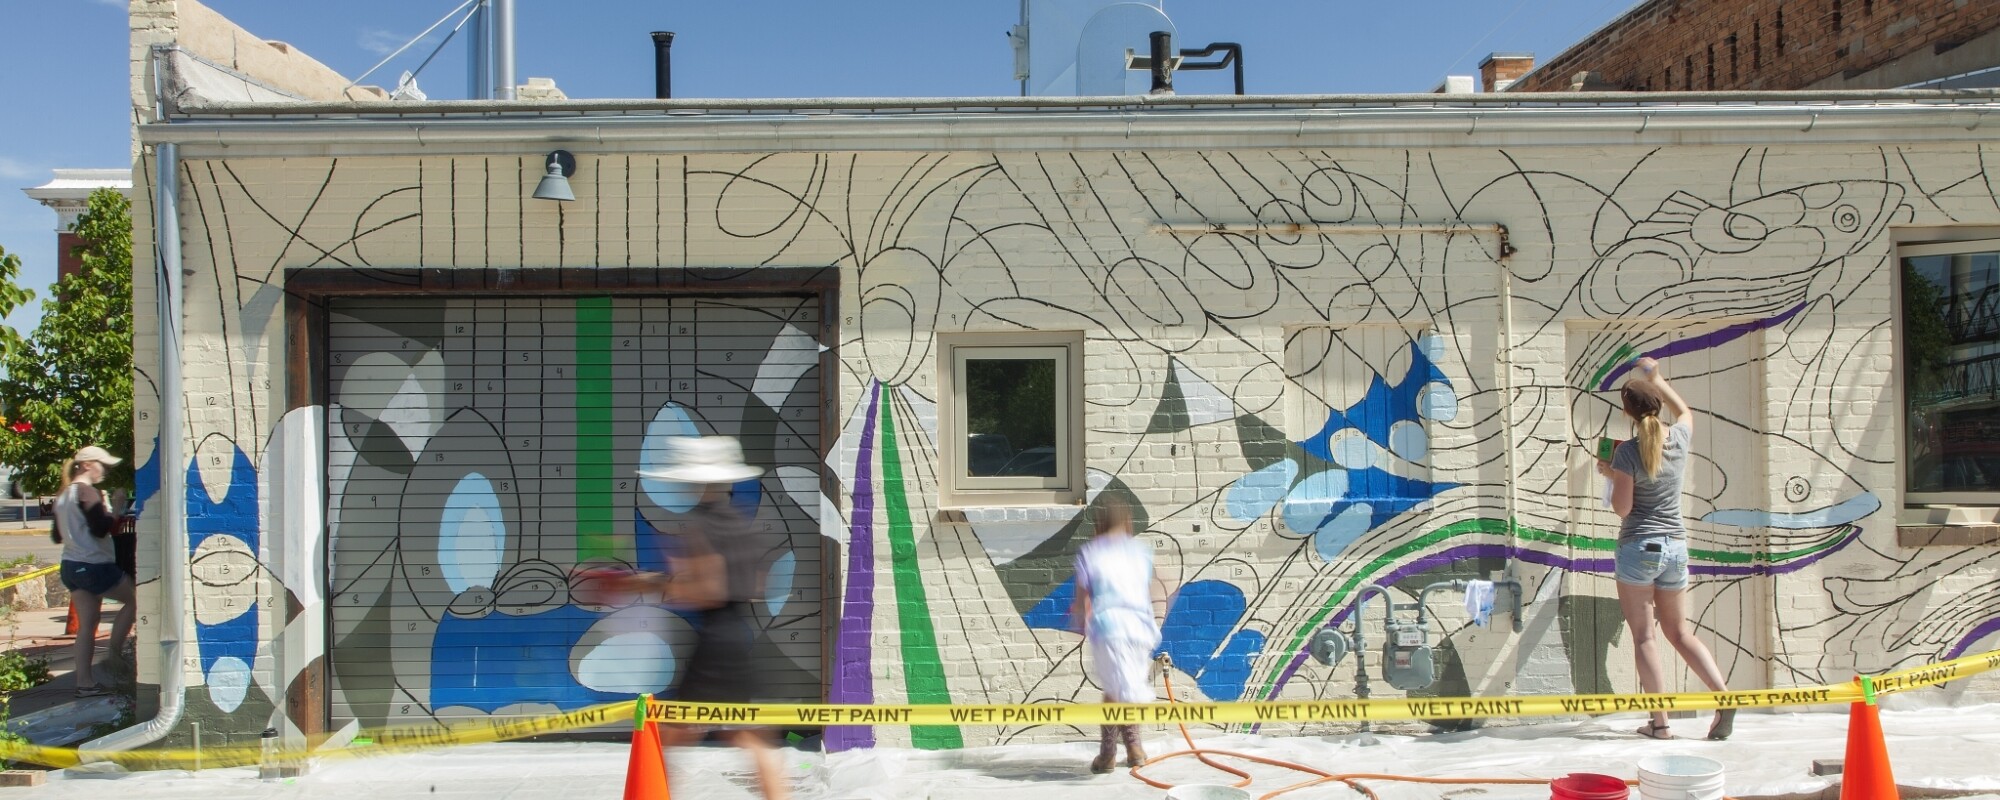 Gente ayudando a pintar un mural con diferentes tonos de azul en el lateral de un edificio del centro.